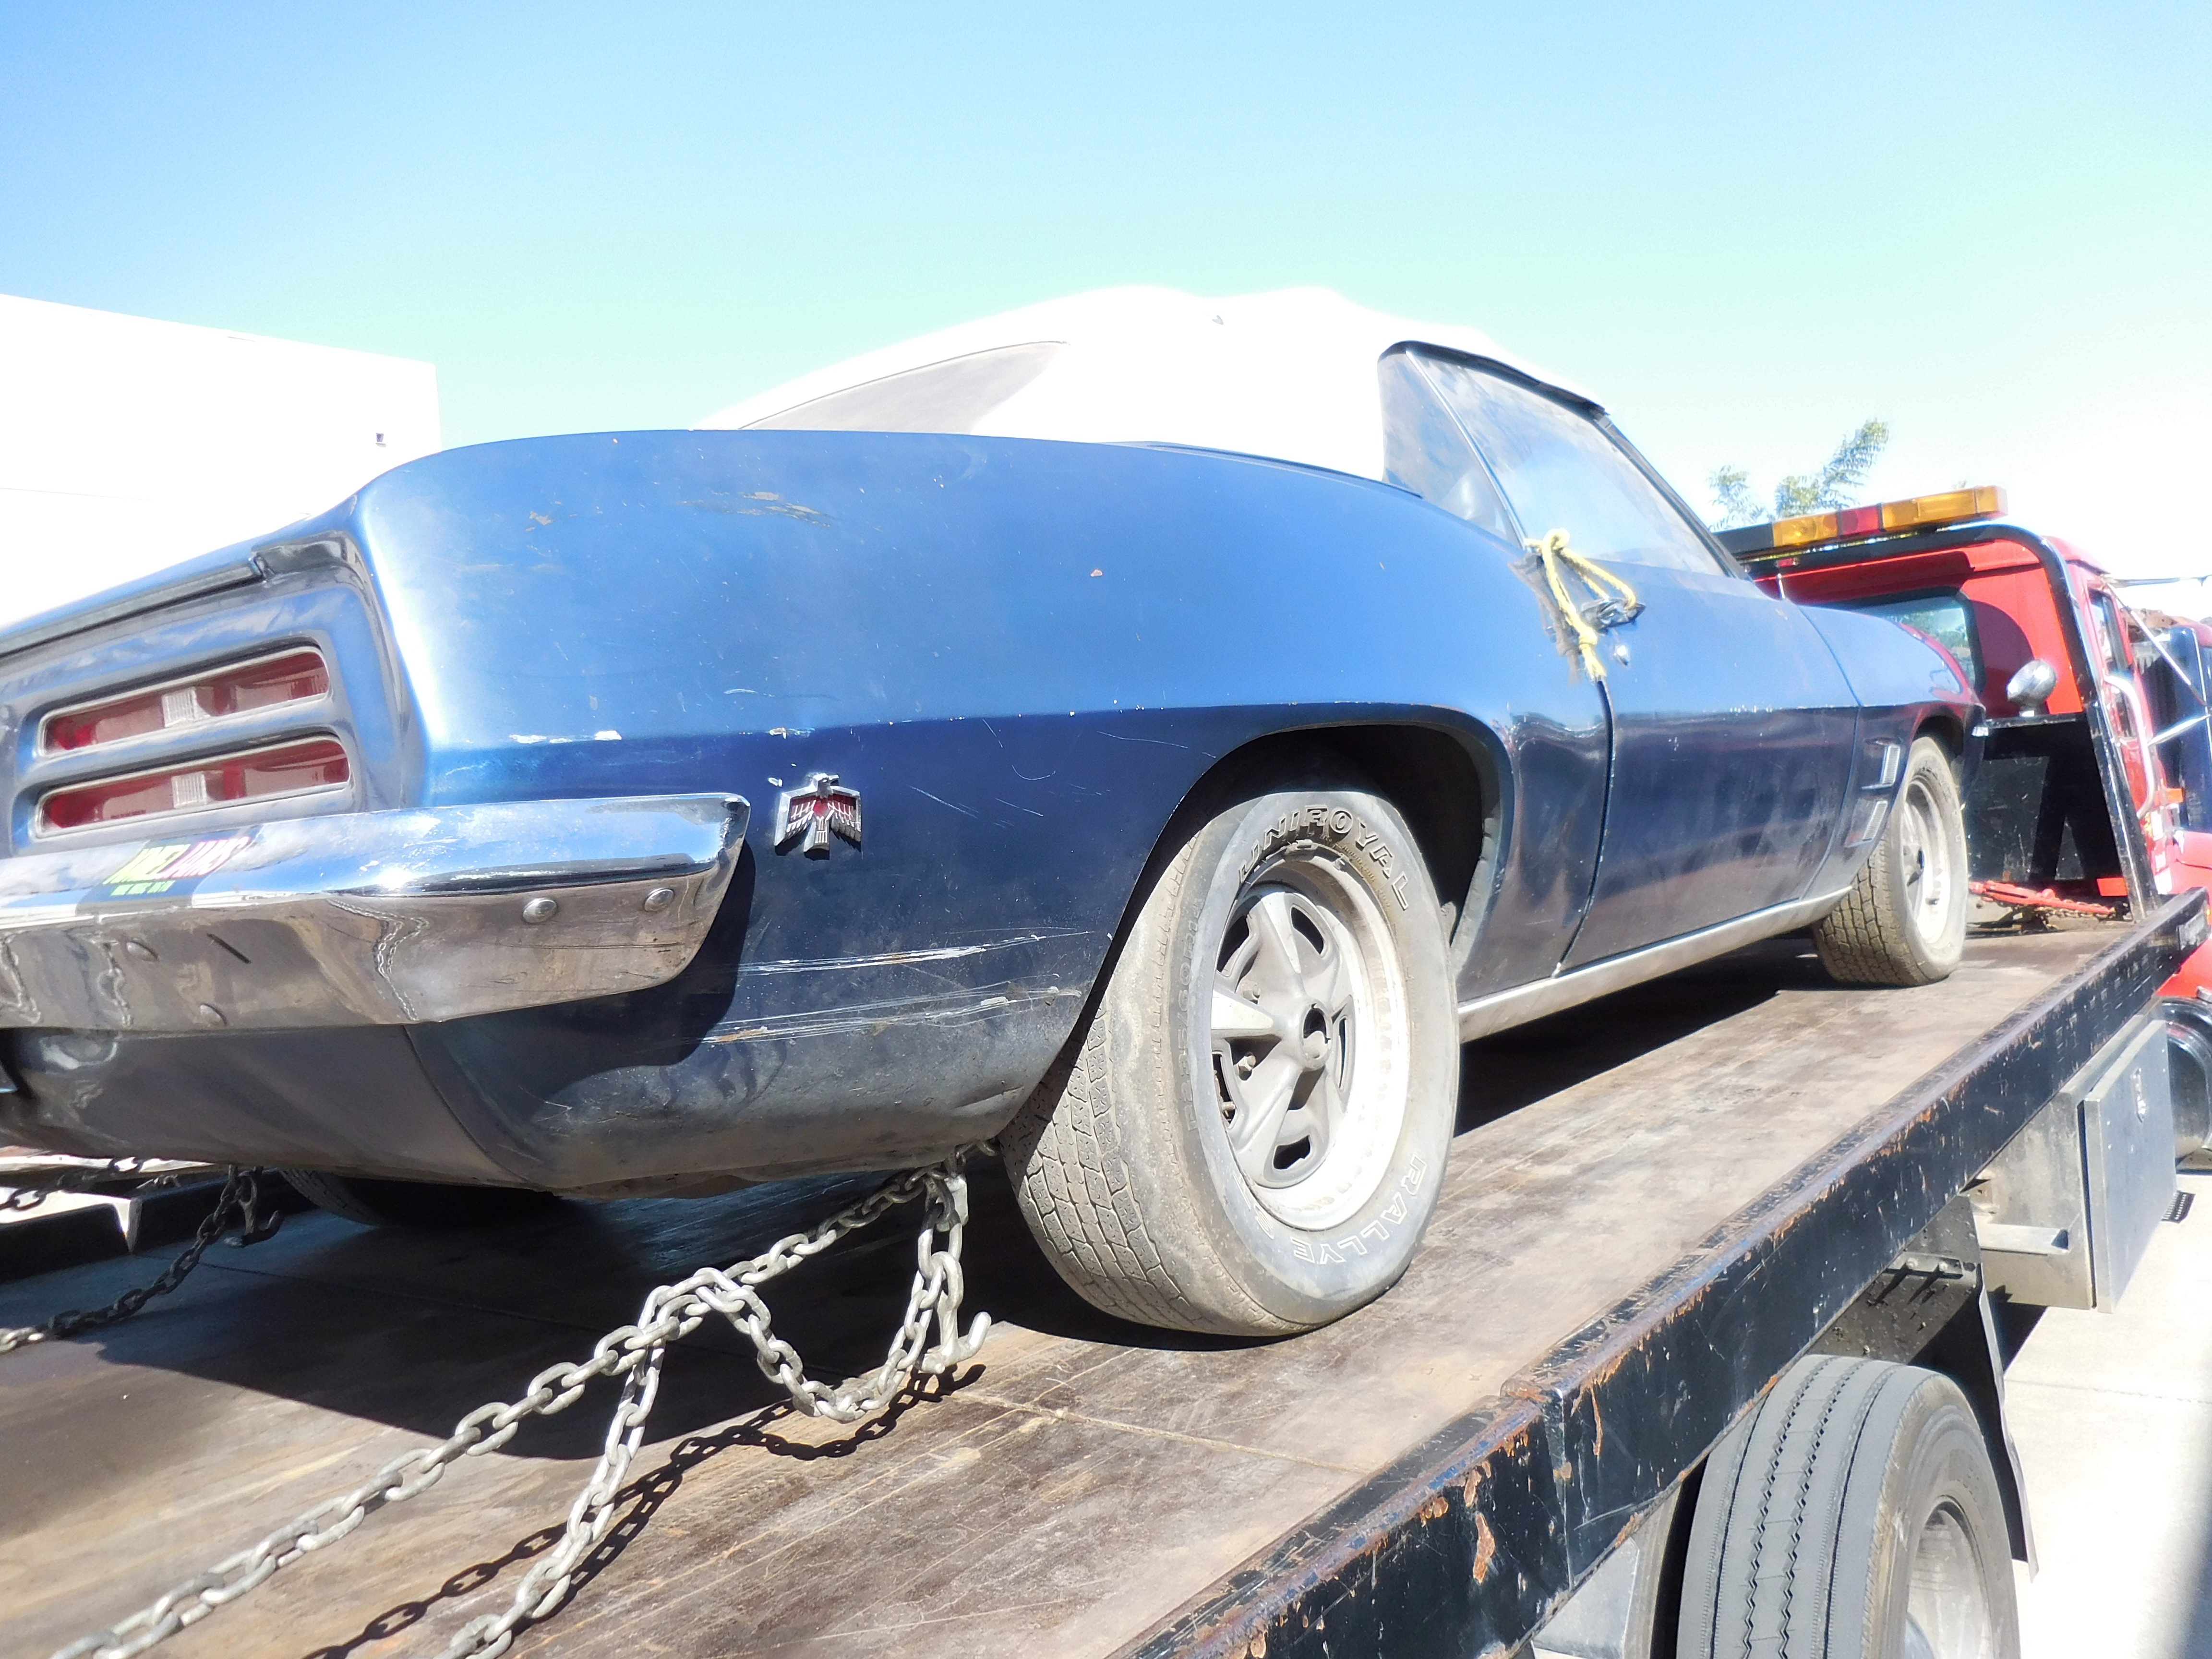 1969, Pontiac, Firebird, Convertible, 400, 4, Speed,